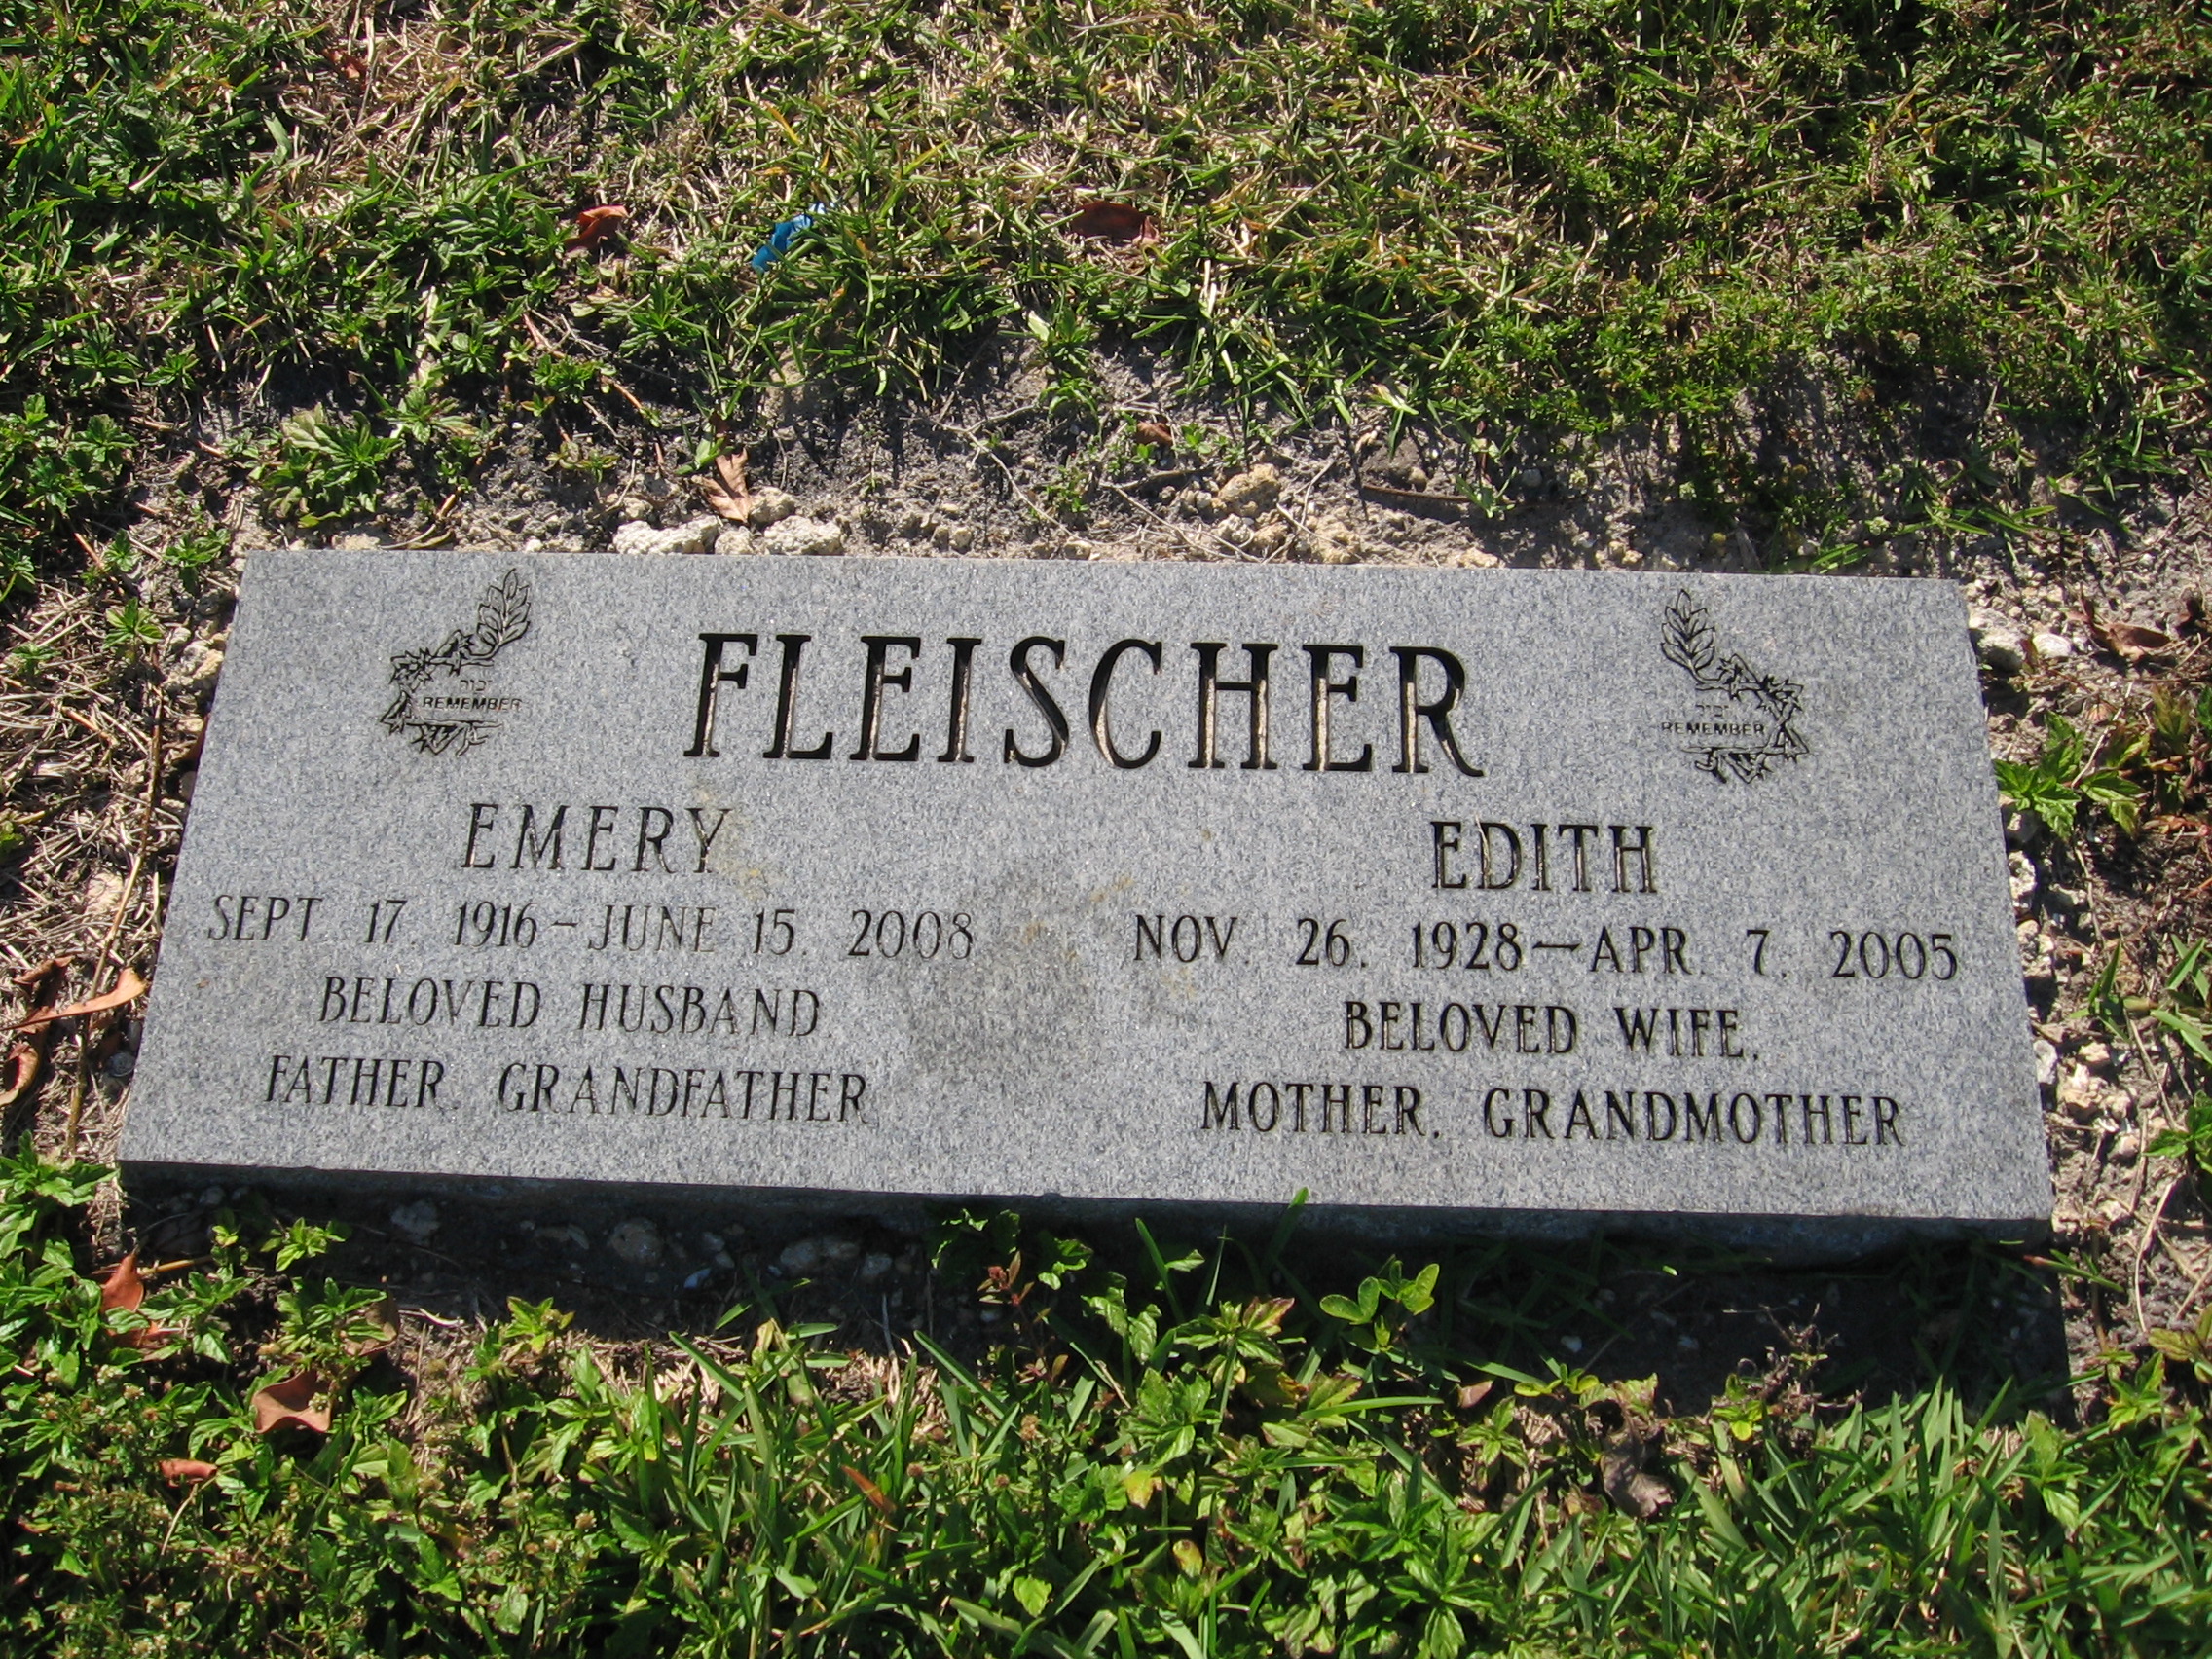 Edith Fleischer